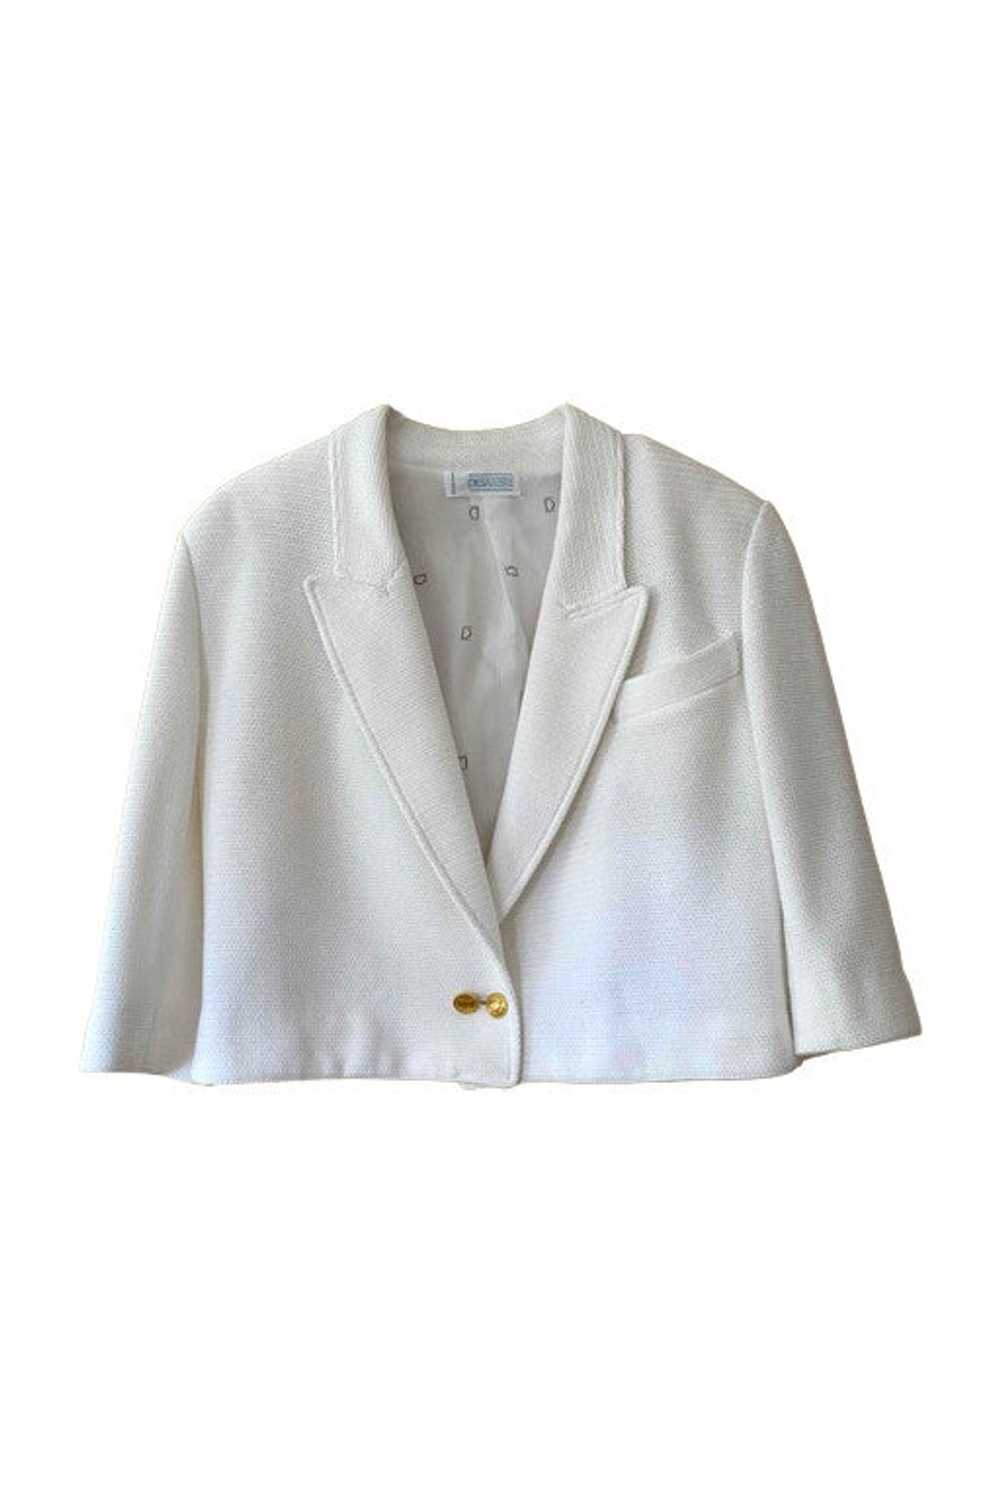 90's short jacket - Beautiful white blazer - image 1